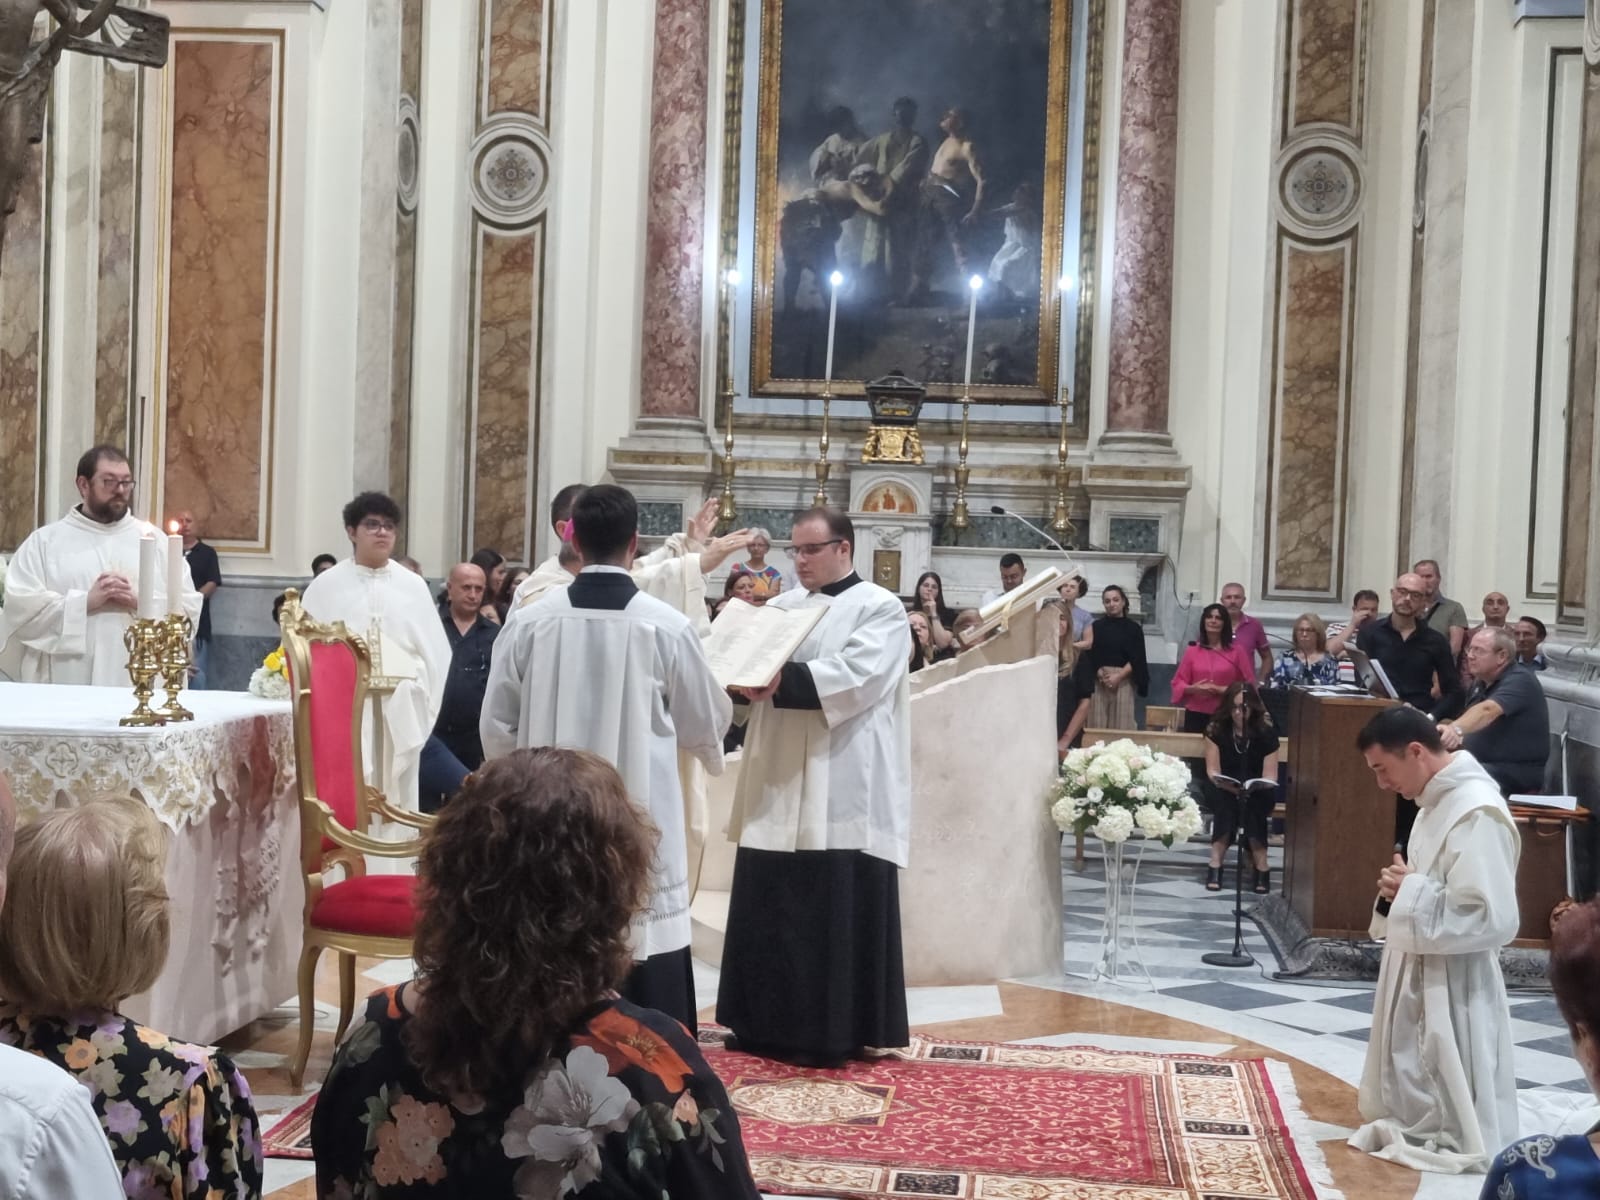 Don Ciro Maione è sacerdote. L'omelia del vescovo Di Donna – Diocesi di  Acerra